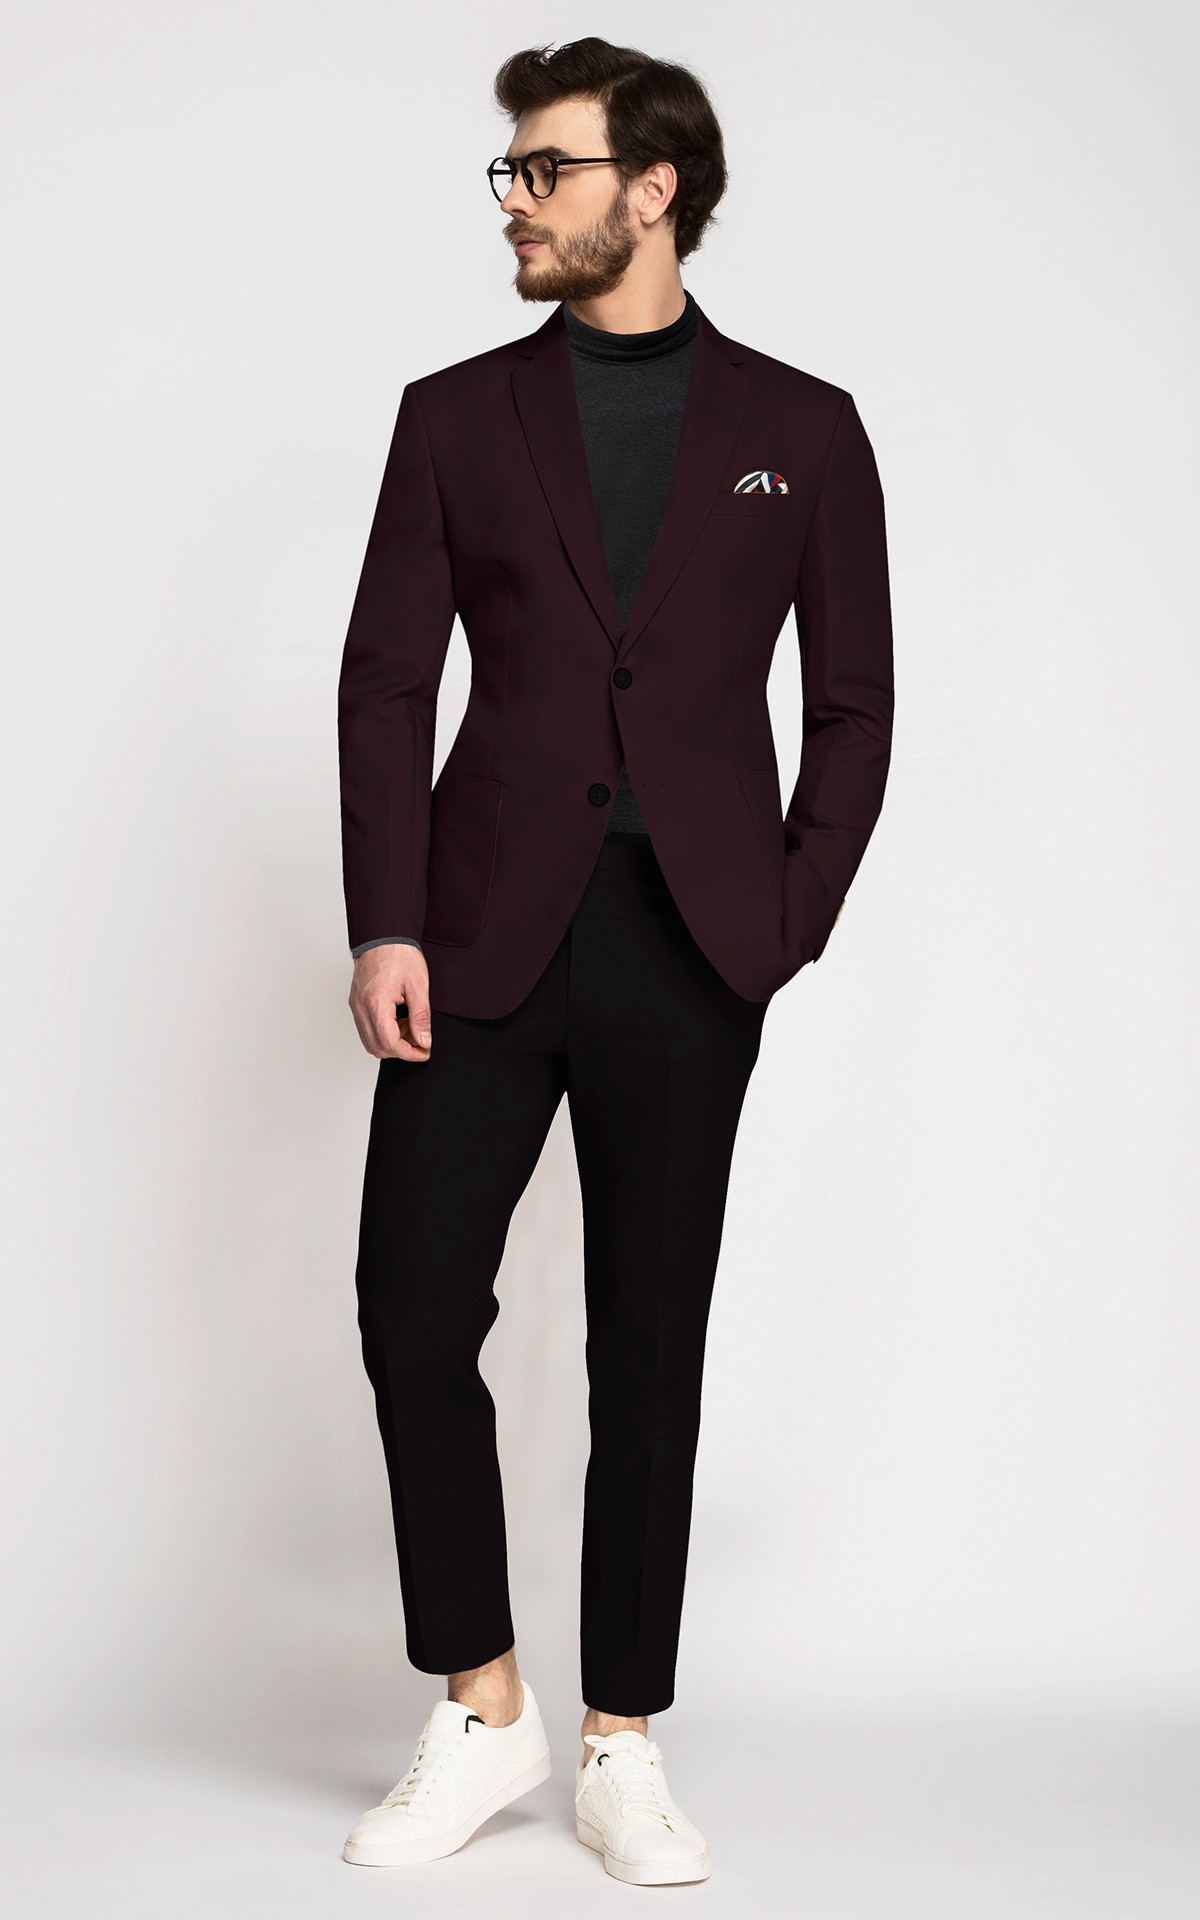 Buy Beige Net N Maroon Jacket Style Gown Festive Wear Online at Best Price  | Cbazaar